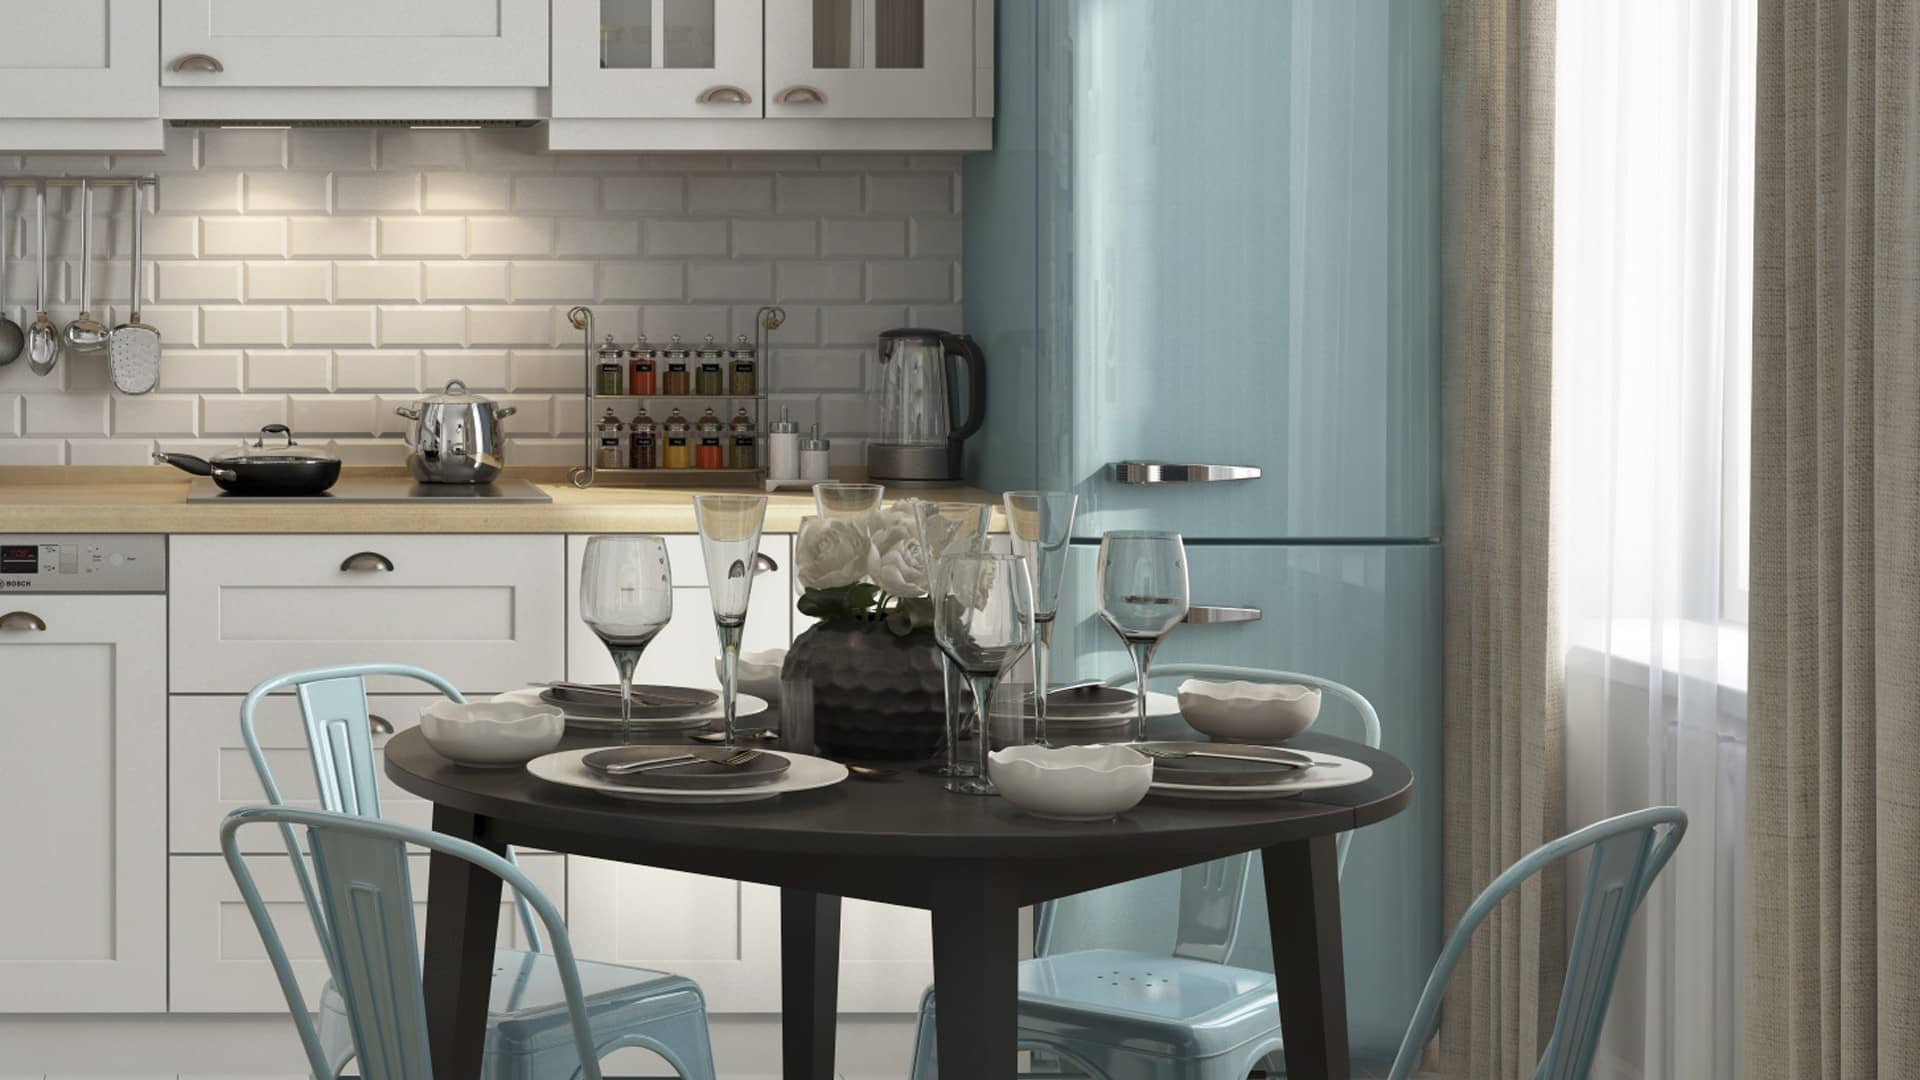 Оформление интерьера кухни трехкомнатной квартиры в скандинавском стиле. Фото № 52151.